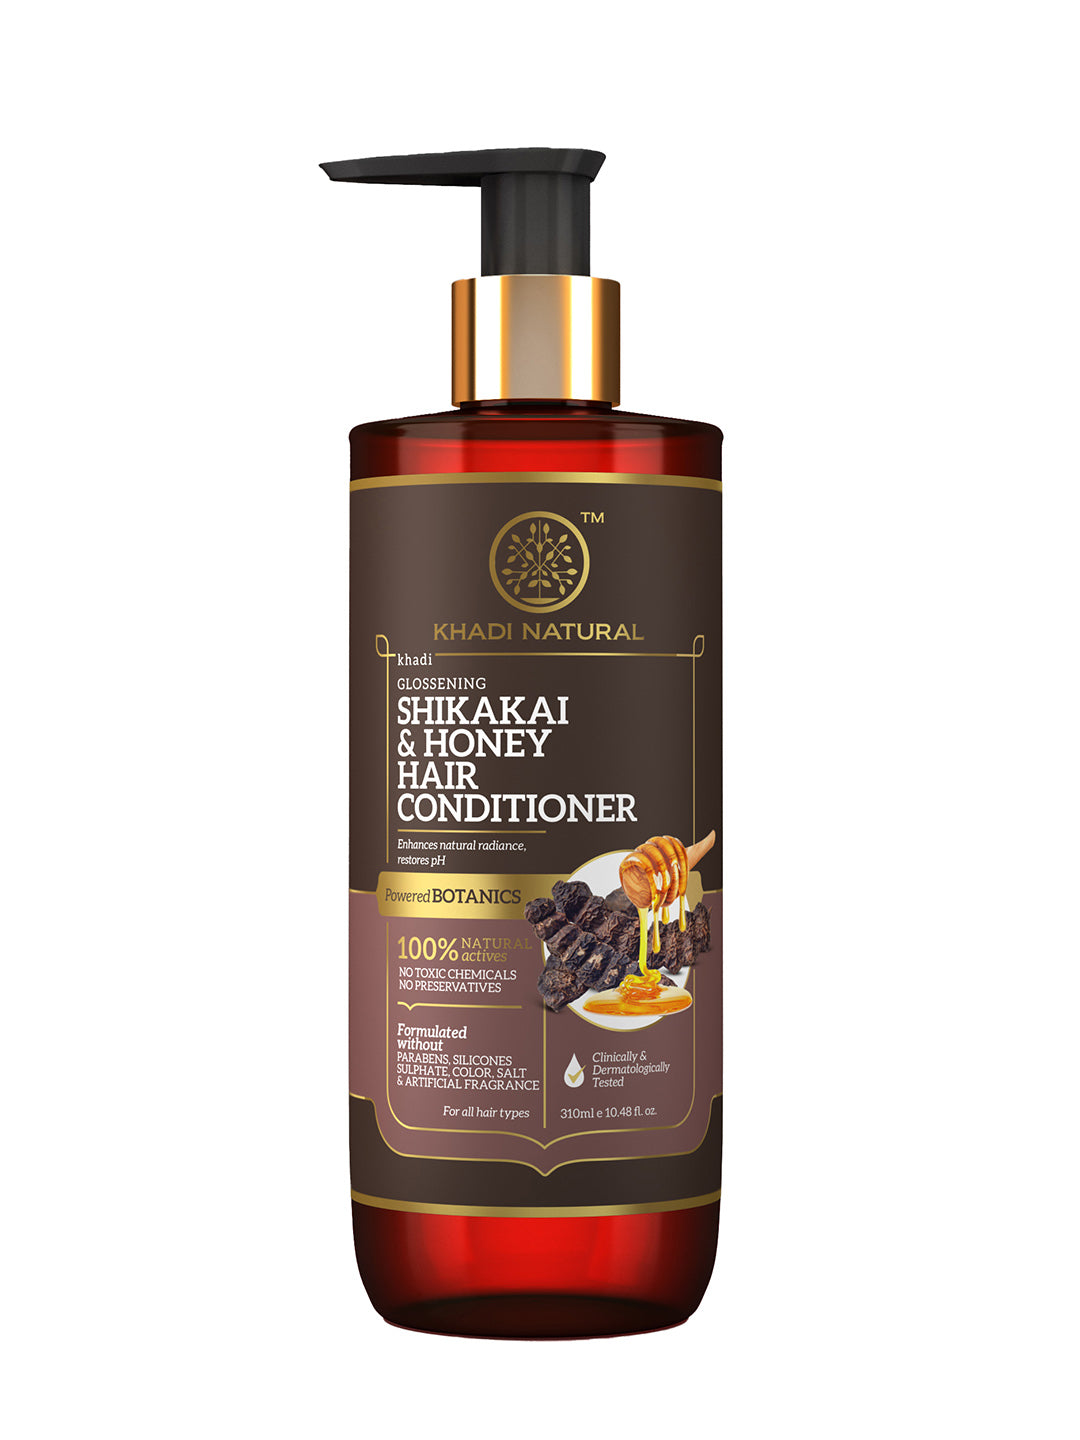 Khadi Natural Shikakai & Honey Hair Conditioner-Powered Botanics-310ml